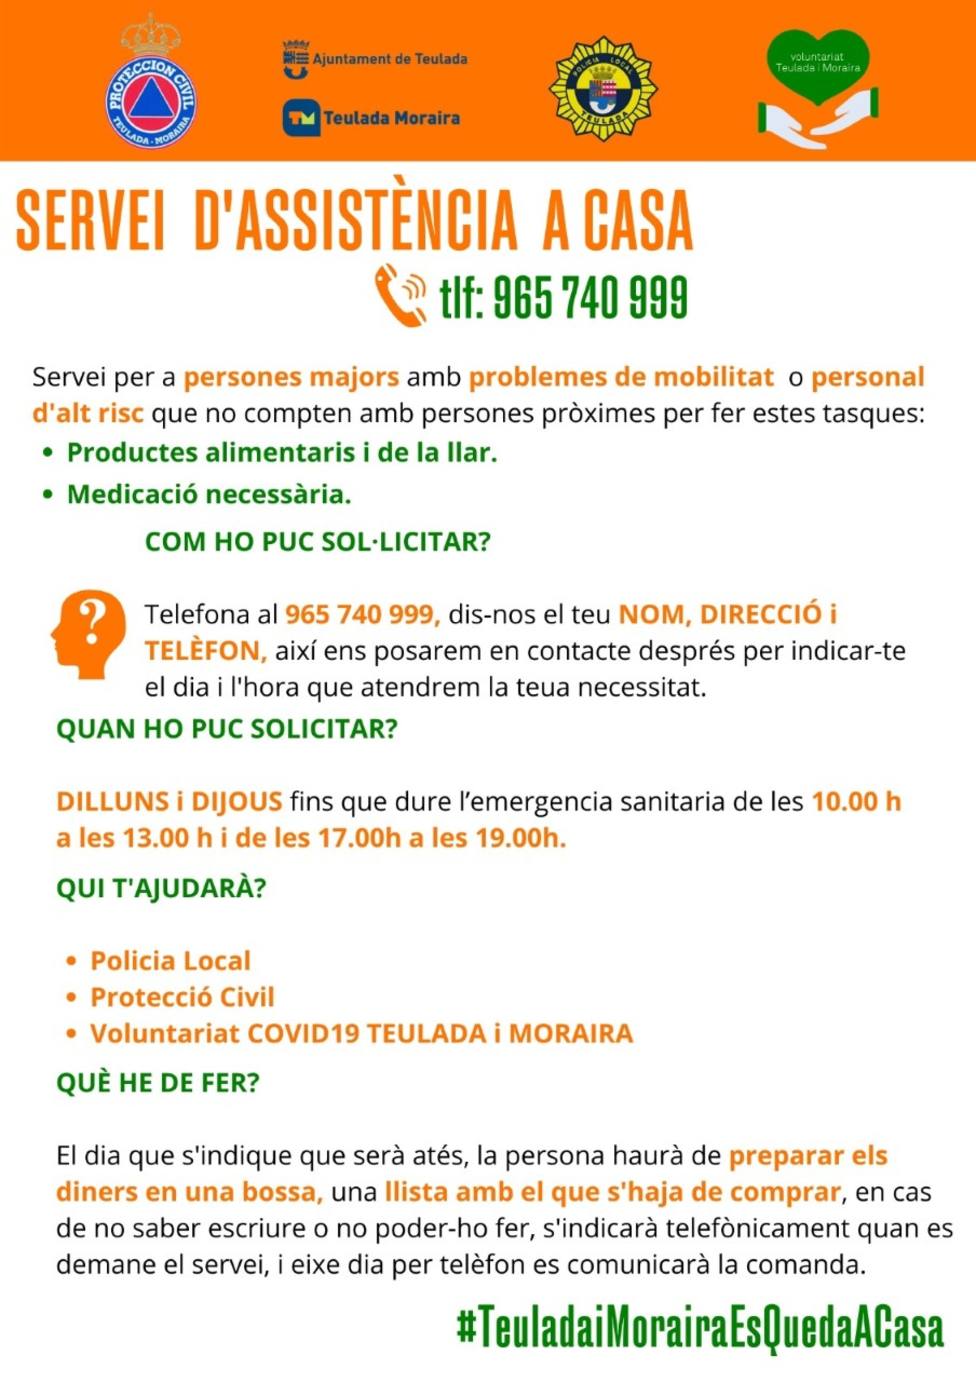 Cartel de Servicio de Asistencia Domiciliaria en Teulada Moriara.